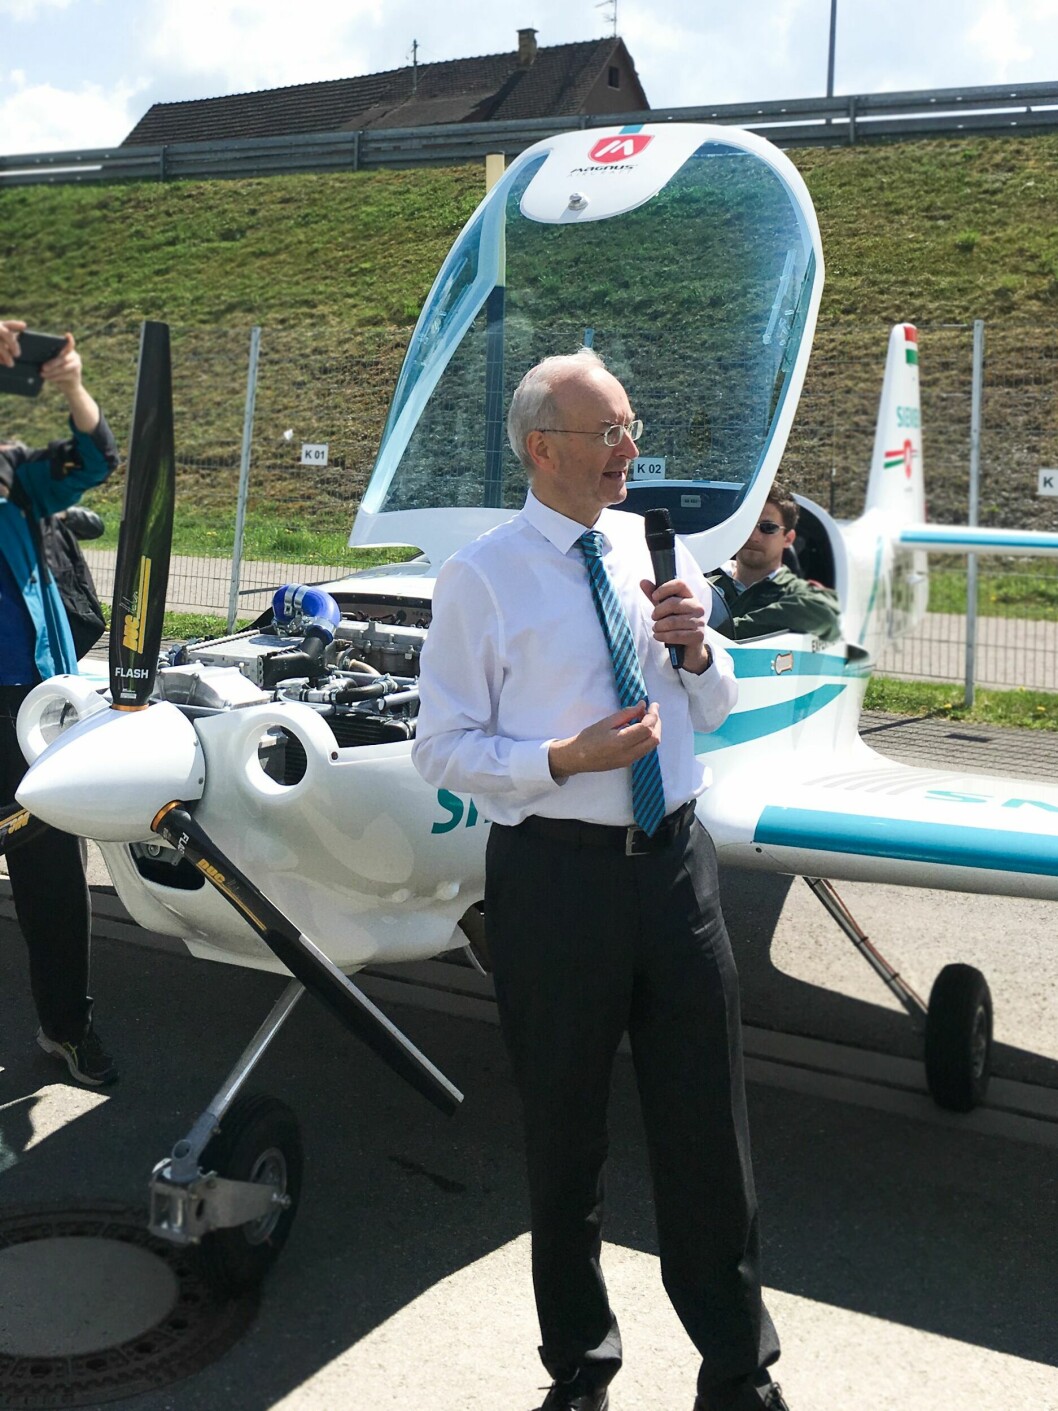 – Dette er mer enn en løsning for et lite sportsfly som dette. Teknologien vi ser her utgjør grunnlaget for all videre utvikling, også i betydelig større skala, forteller Dr. Frank Anton fra Siemens.